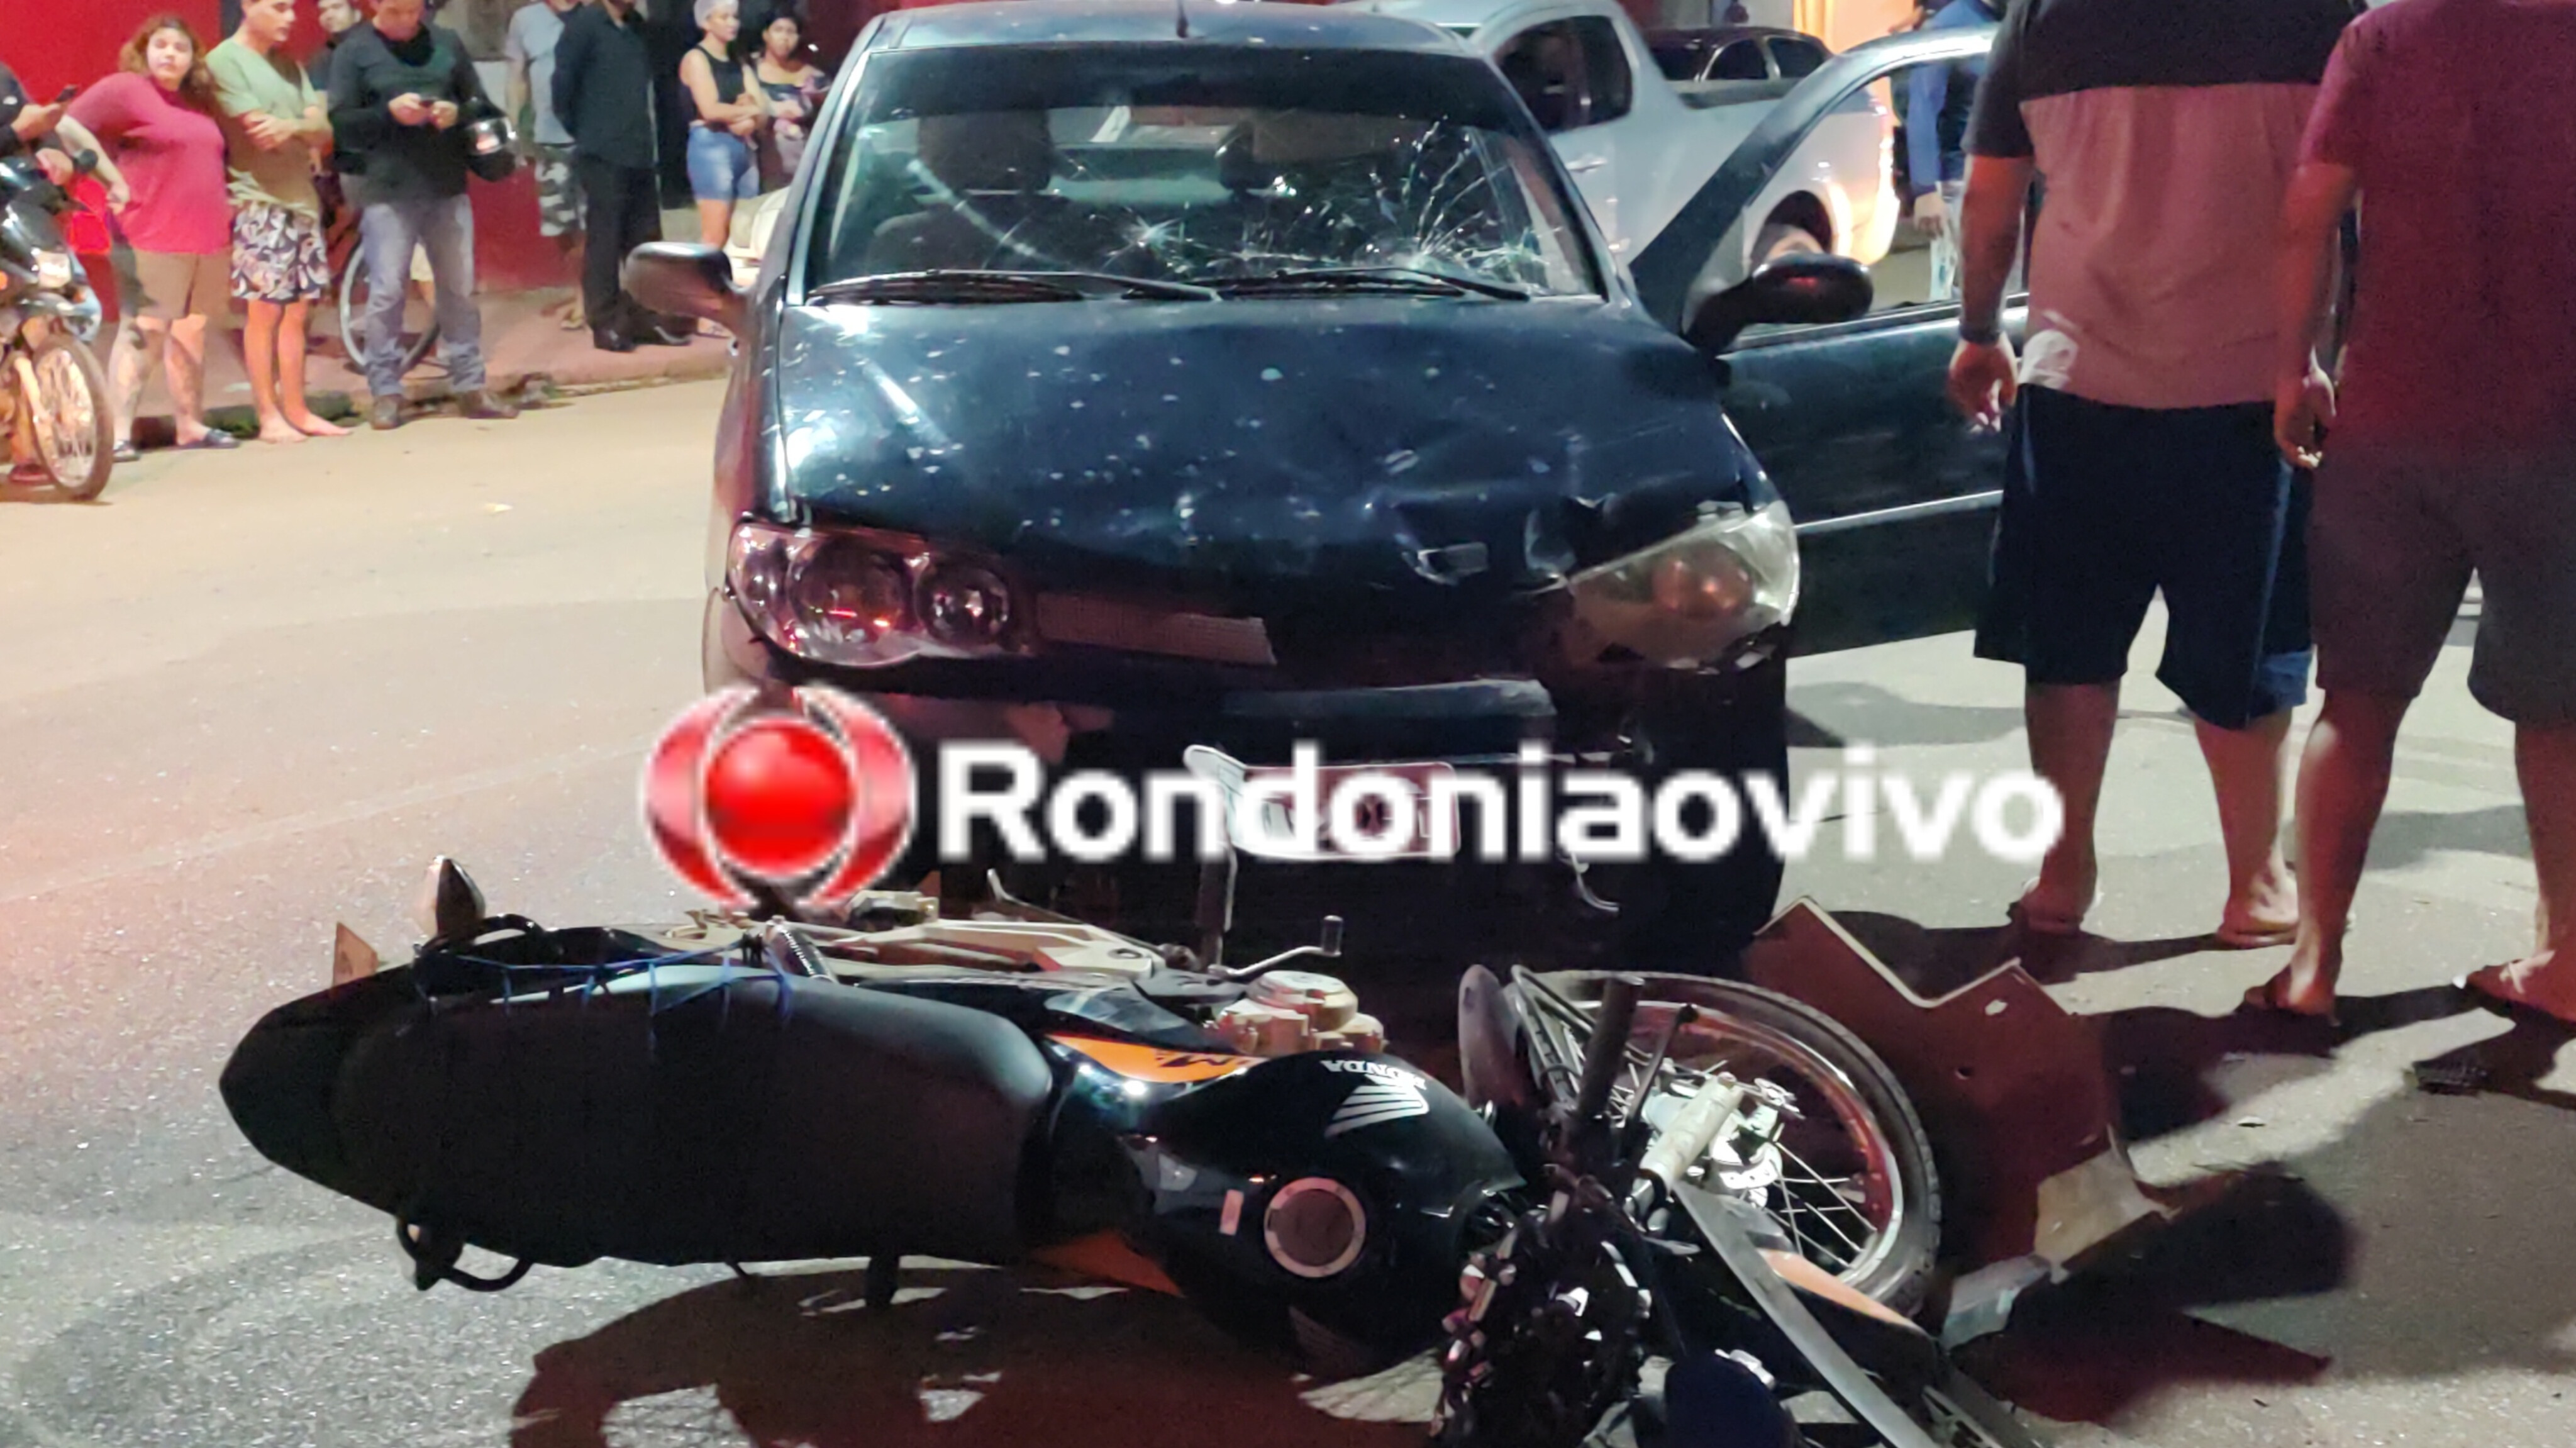 VÍDEO: Passageiro de moto aplicativo morre em grave acidente